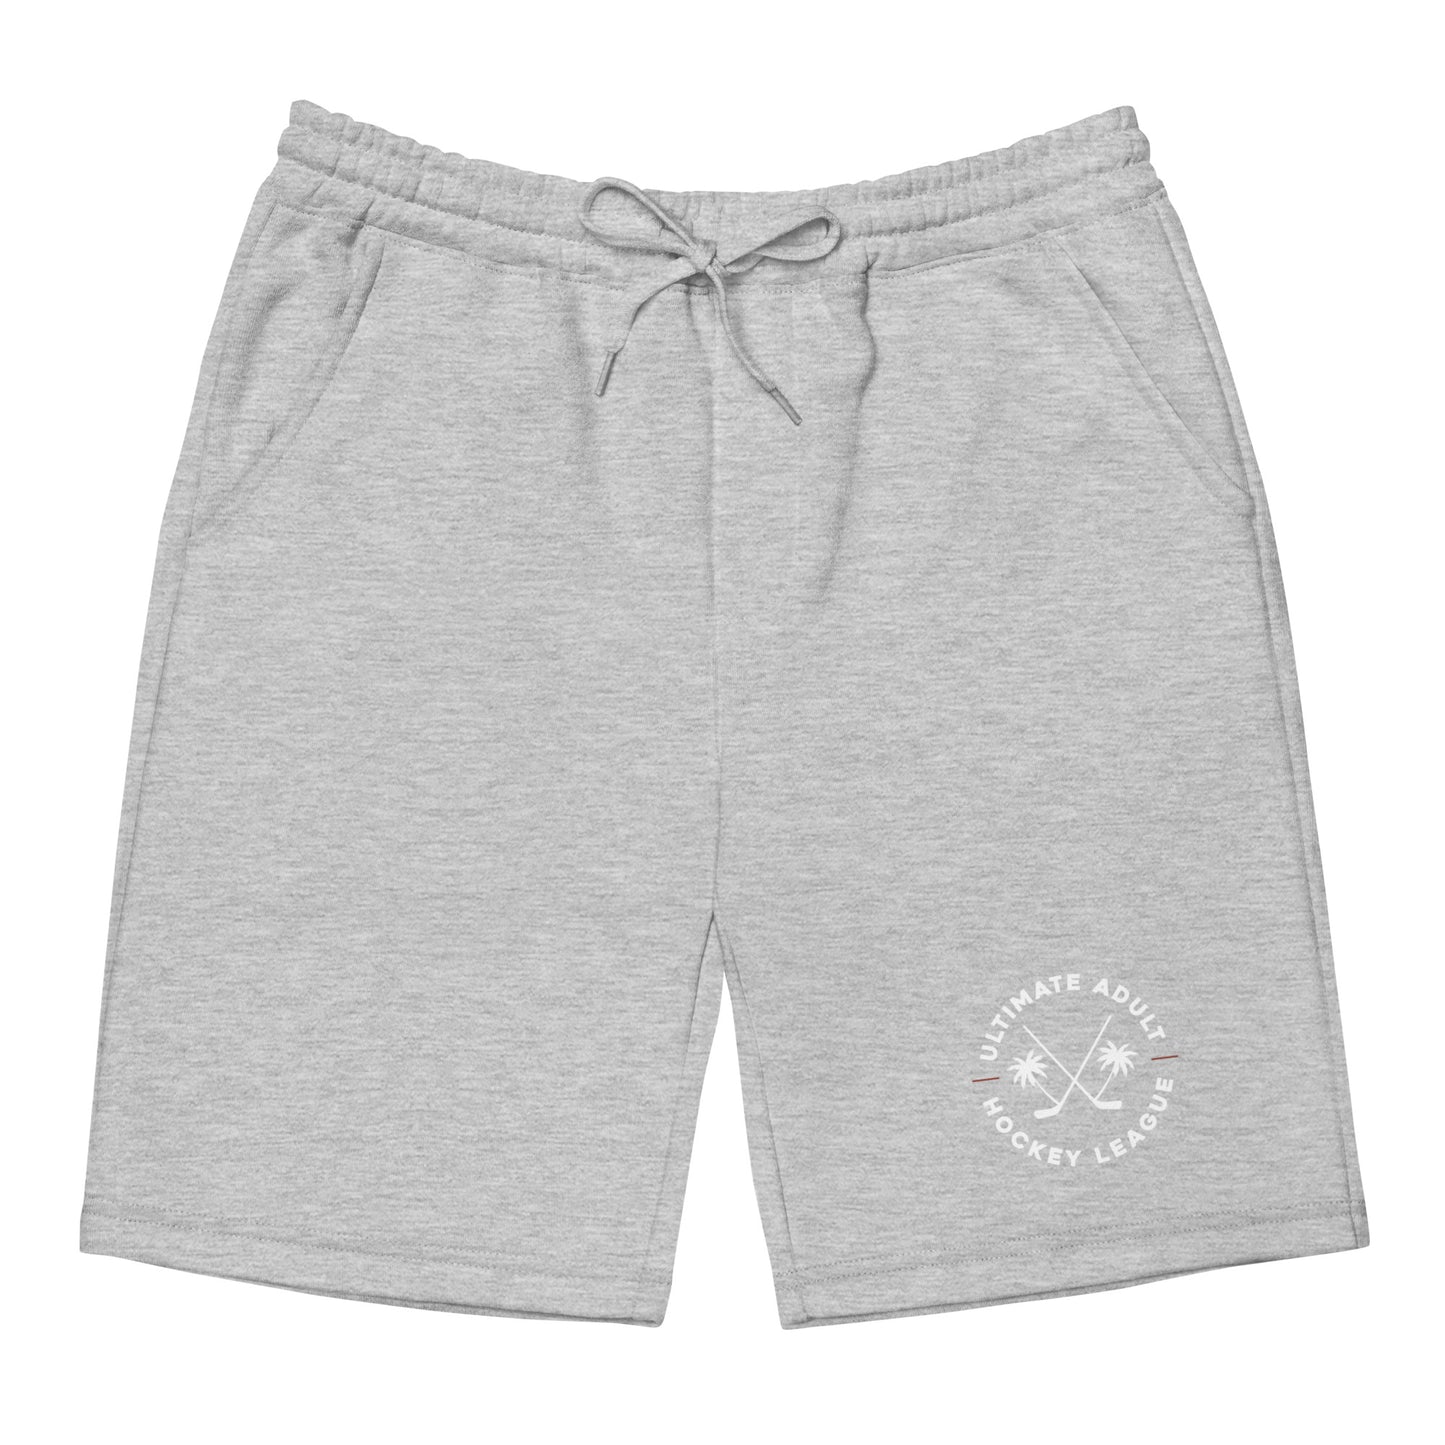 UAHL Summer Series - Men's Fleece Shorts